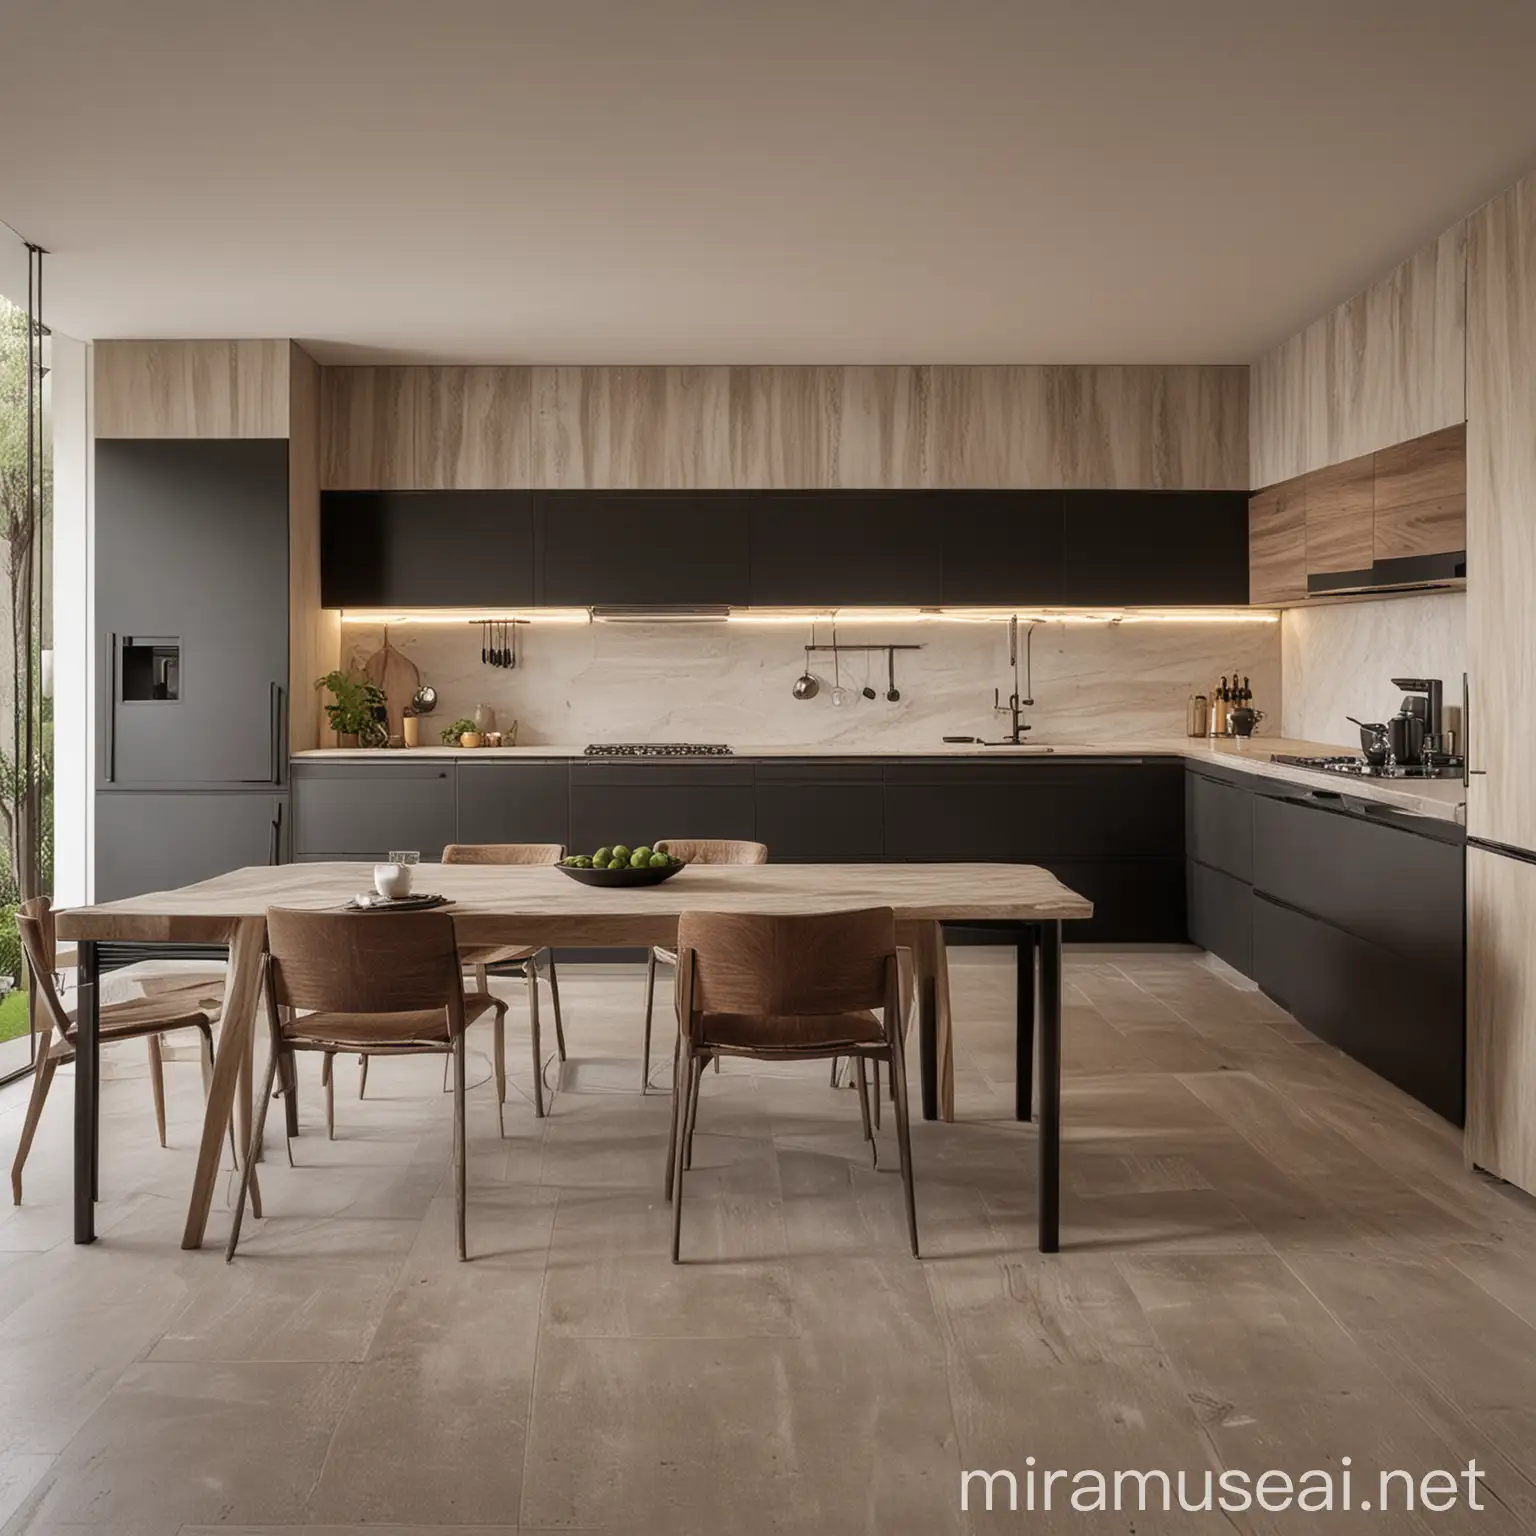 Luxurious Minimalistic Kitchen Interior with Modern Design